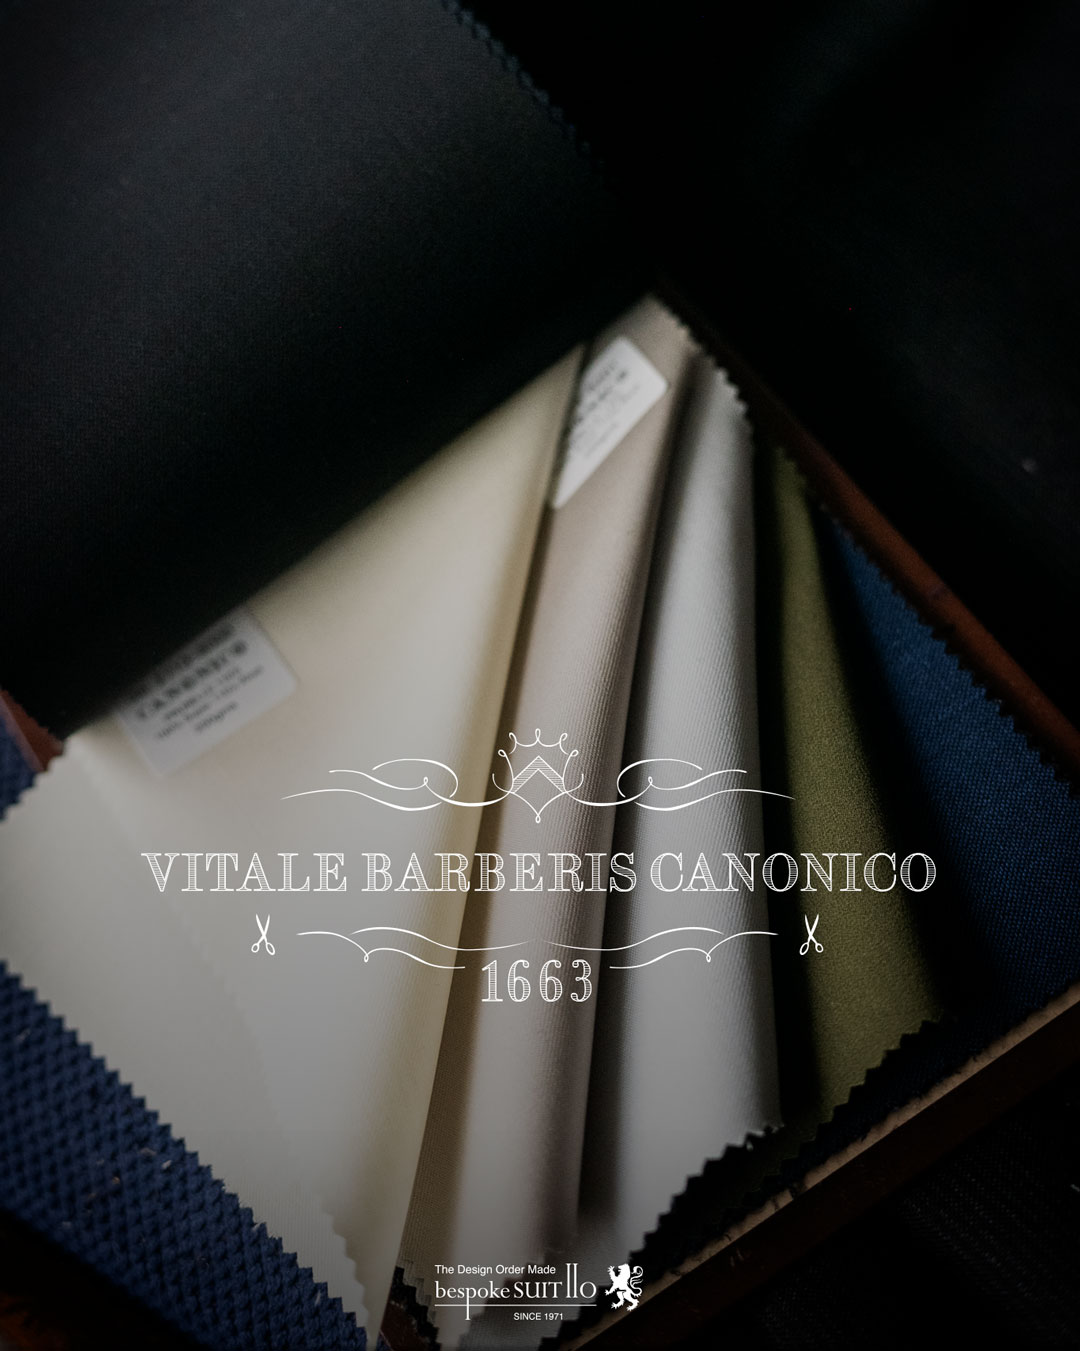 VITALE BARBERIS CANONICO（ヴィターレ・バルべリス・カノニコ）は、イタリアの老舗の生地メーカーです。1635年に創業し、現在も同じ家系で経営されています¹²。世界中の高級スーツやコートのブランドに生地を提供しており、品質と伝統を重んじるメーカーとして知られています³。VITALE BARBERIS CANONICOの生地は、上質なウールやカシミアなどの素材を使用し、独自の染色や織り方で美しい色合いや風合いを表現しています¹²。VITALE BARBERIS CANONICOの生地を使ったスーツやコートは、エレガントで洗練された印象を与えます。,2023aw秋冬新柄コレクション入荷 ,ordersuits,ドレスシャツオーダージャケット,orderJacket,オーダーベスト,oedervest,ビスポーク,,オーダーシャツ,オーダースーツ,背広,誂え,仕立,紳士,福岡,黒崎,小倉,北九州,八幡西区,ビスポークスーツ１１０,bespokeSUIT110,bespokeSUITIIO, 